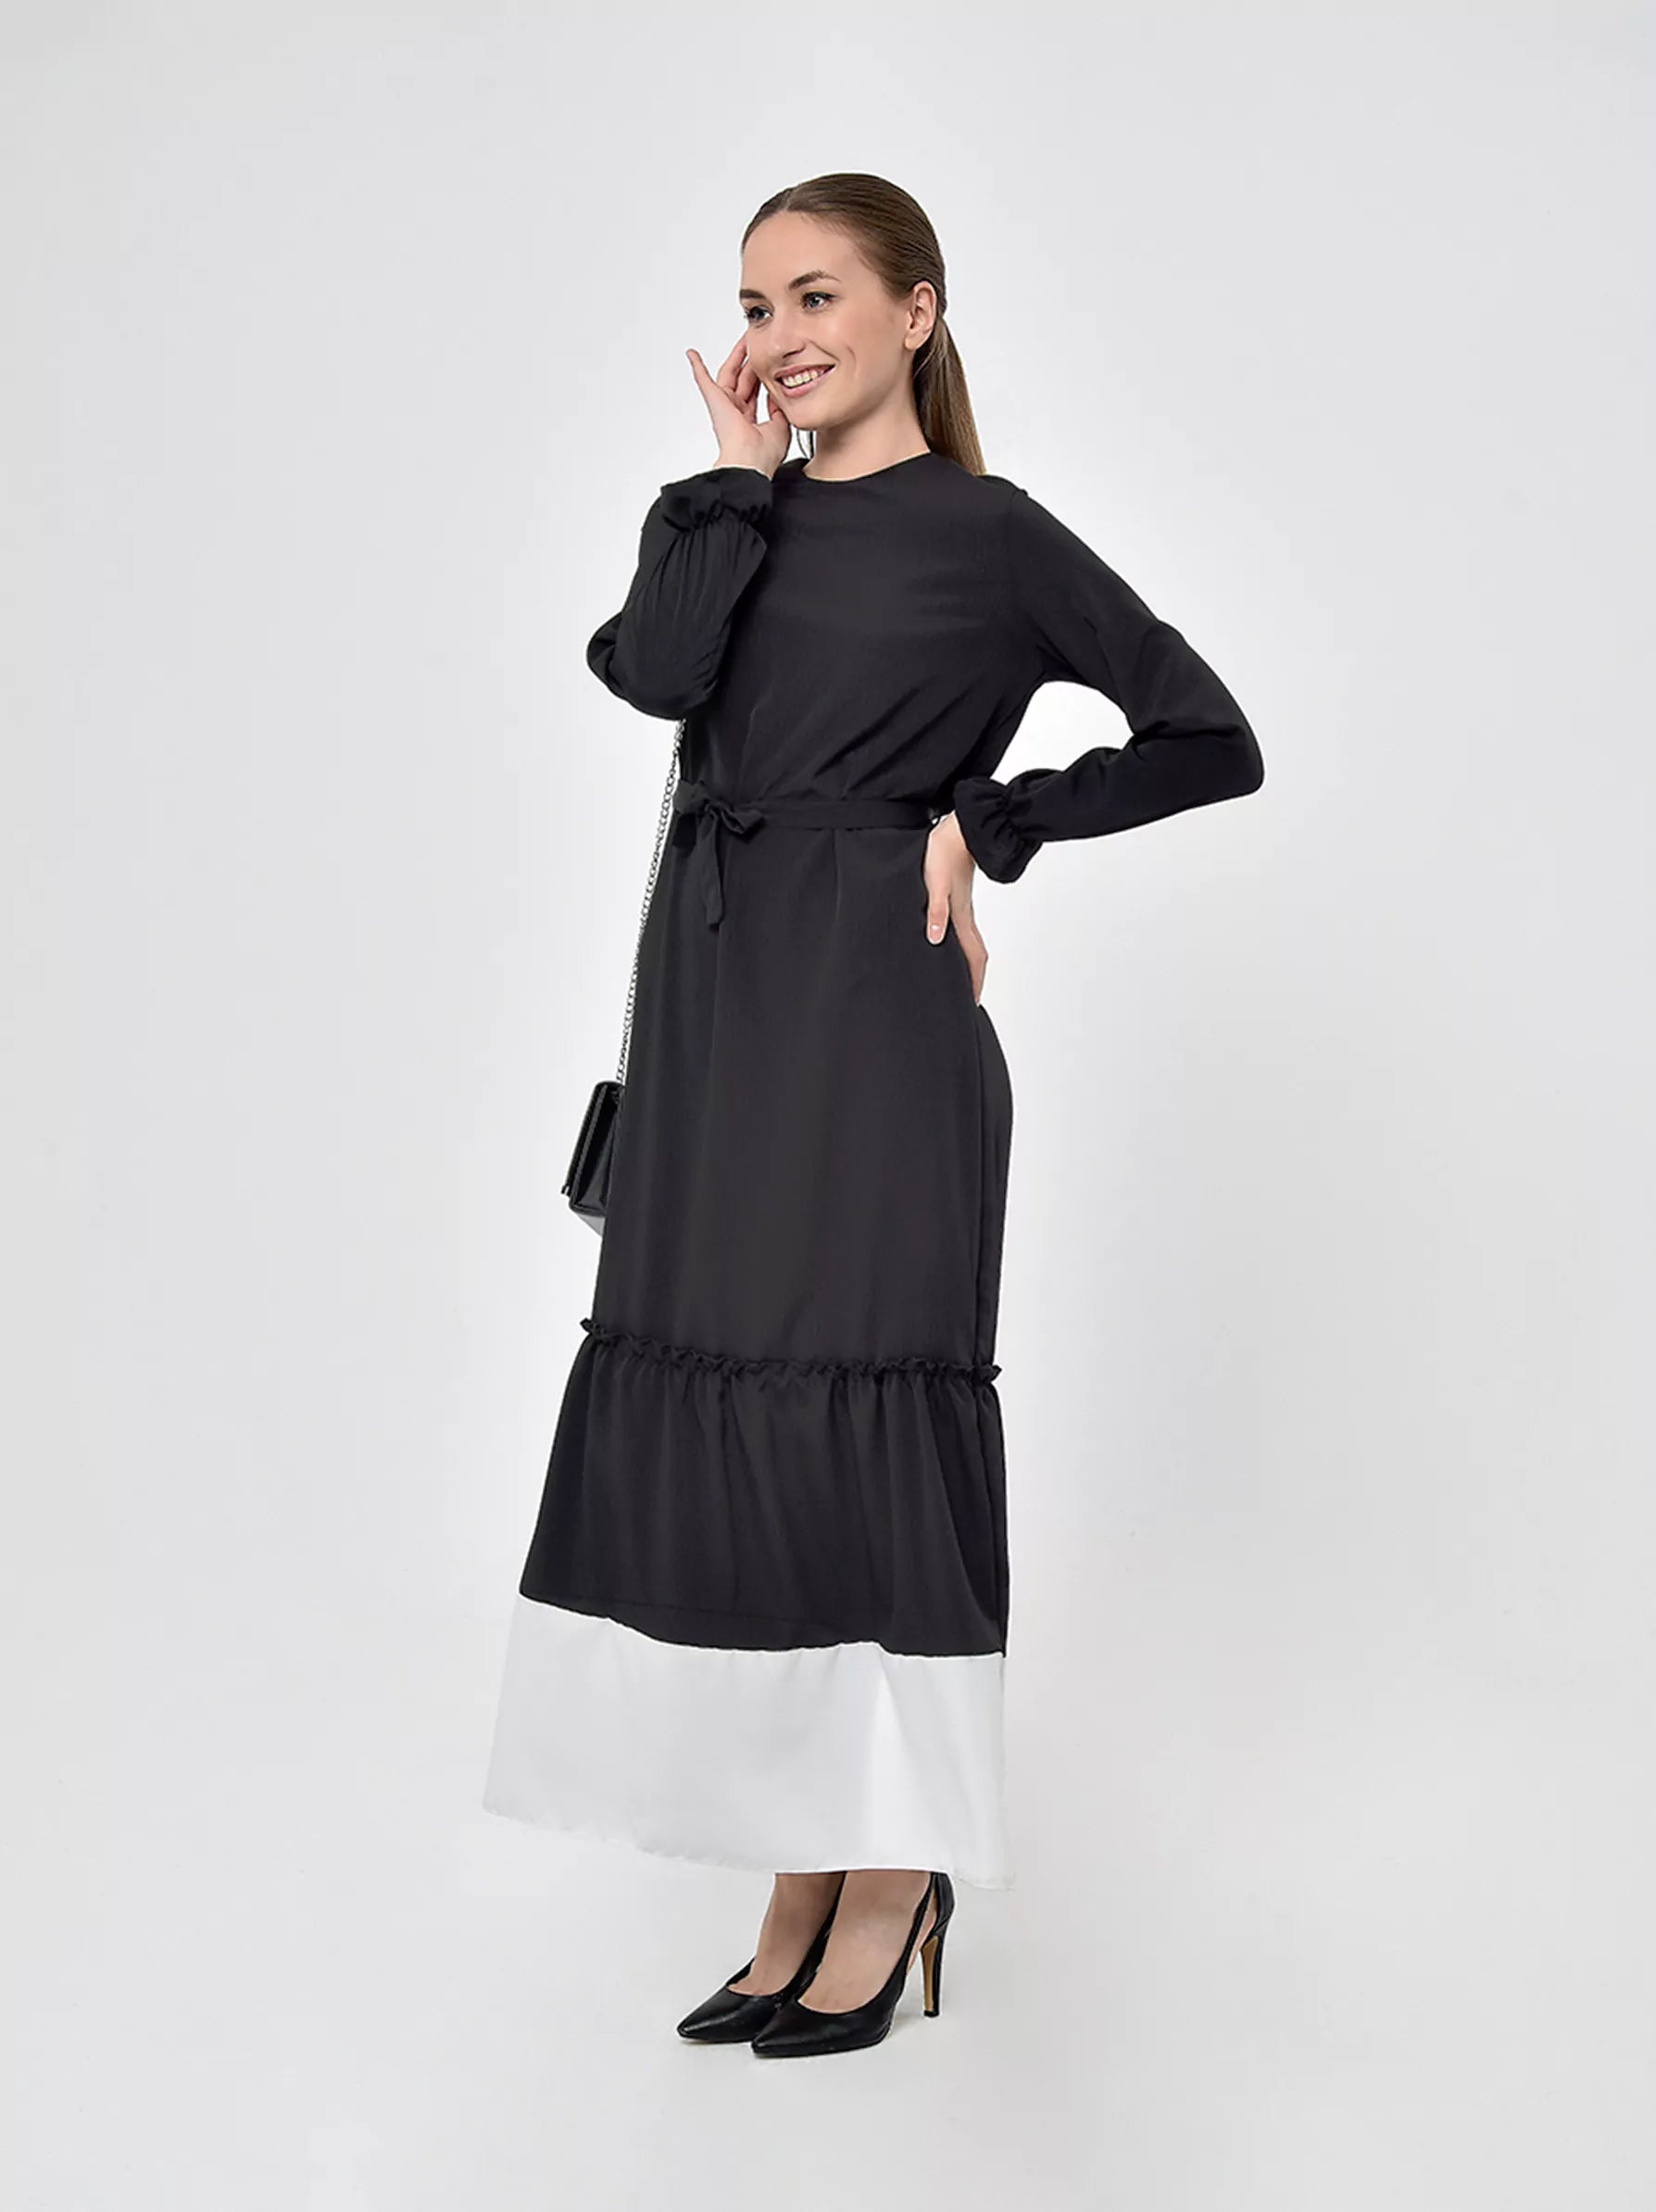 black flared skirt dress